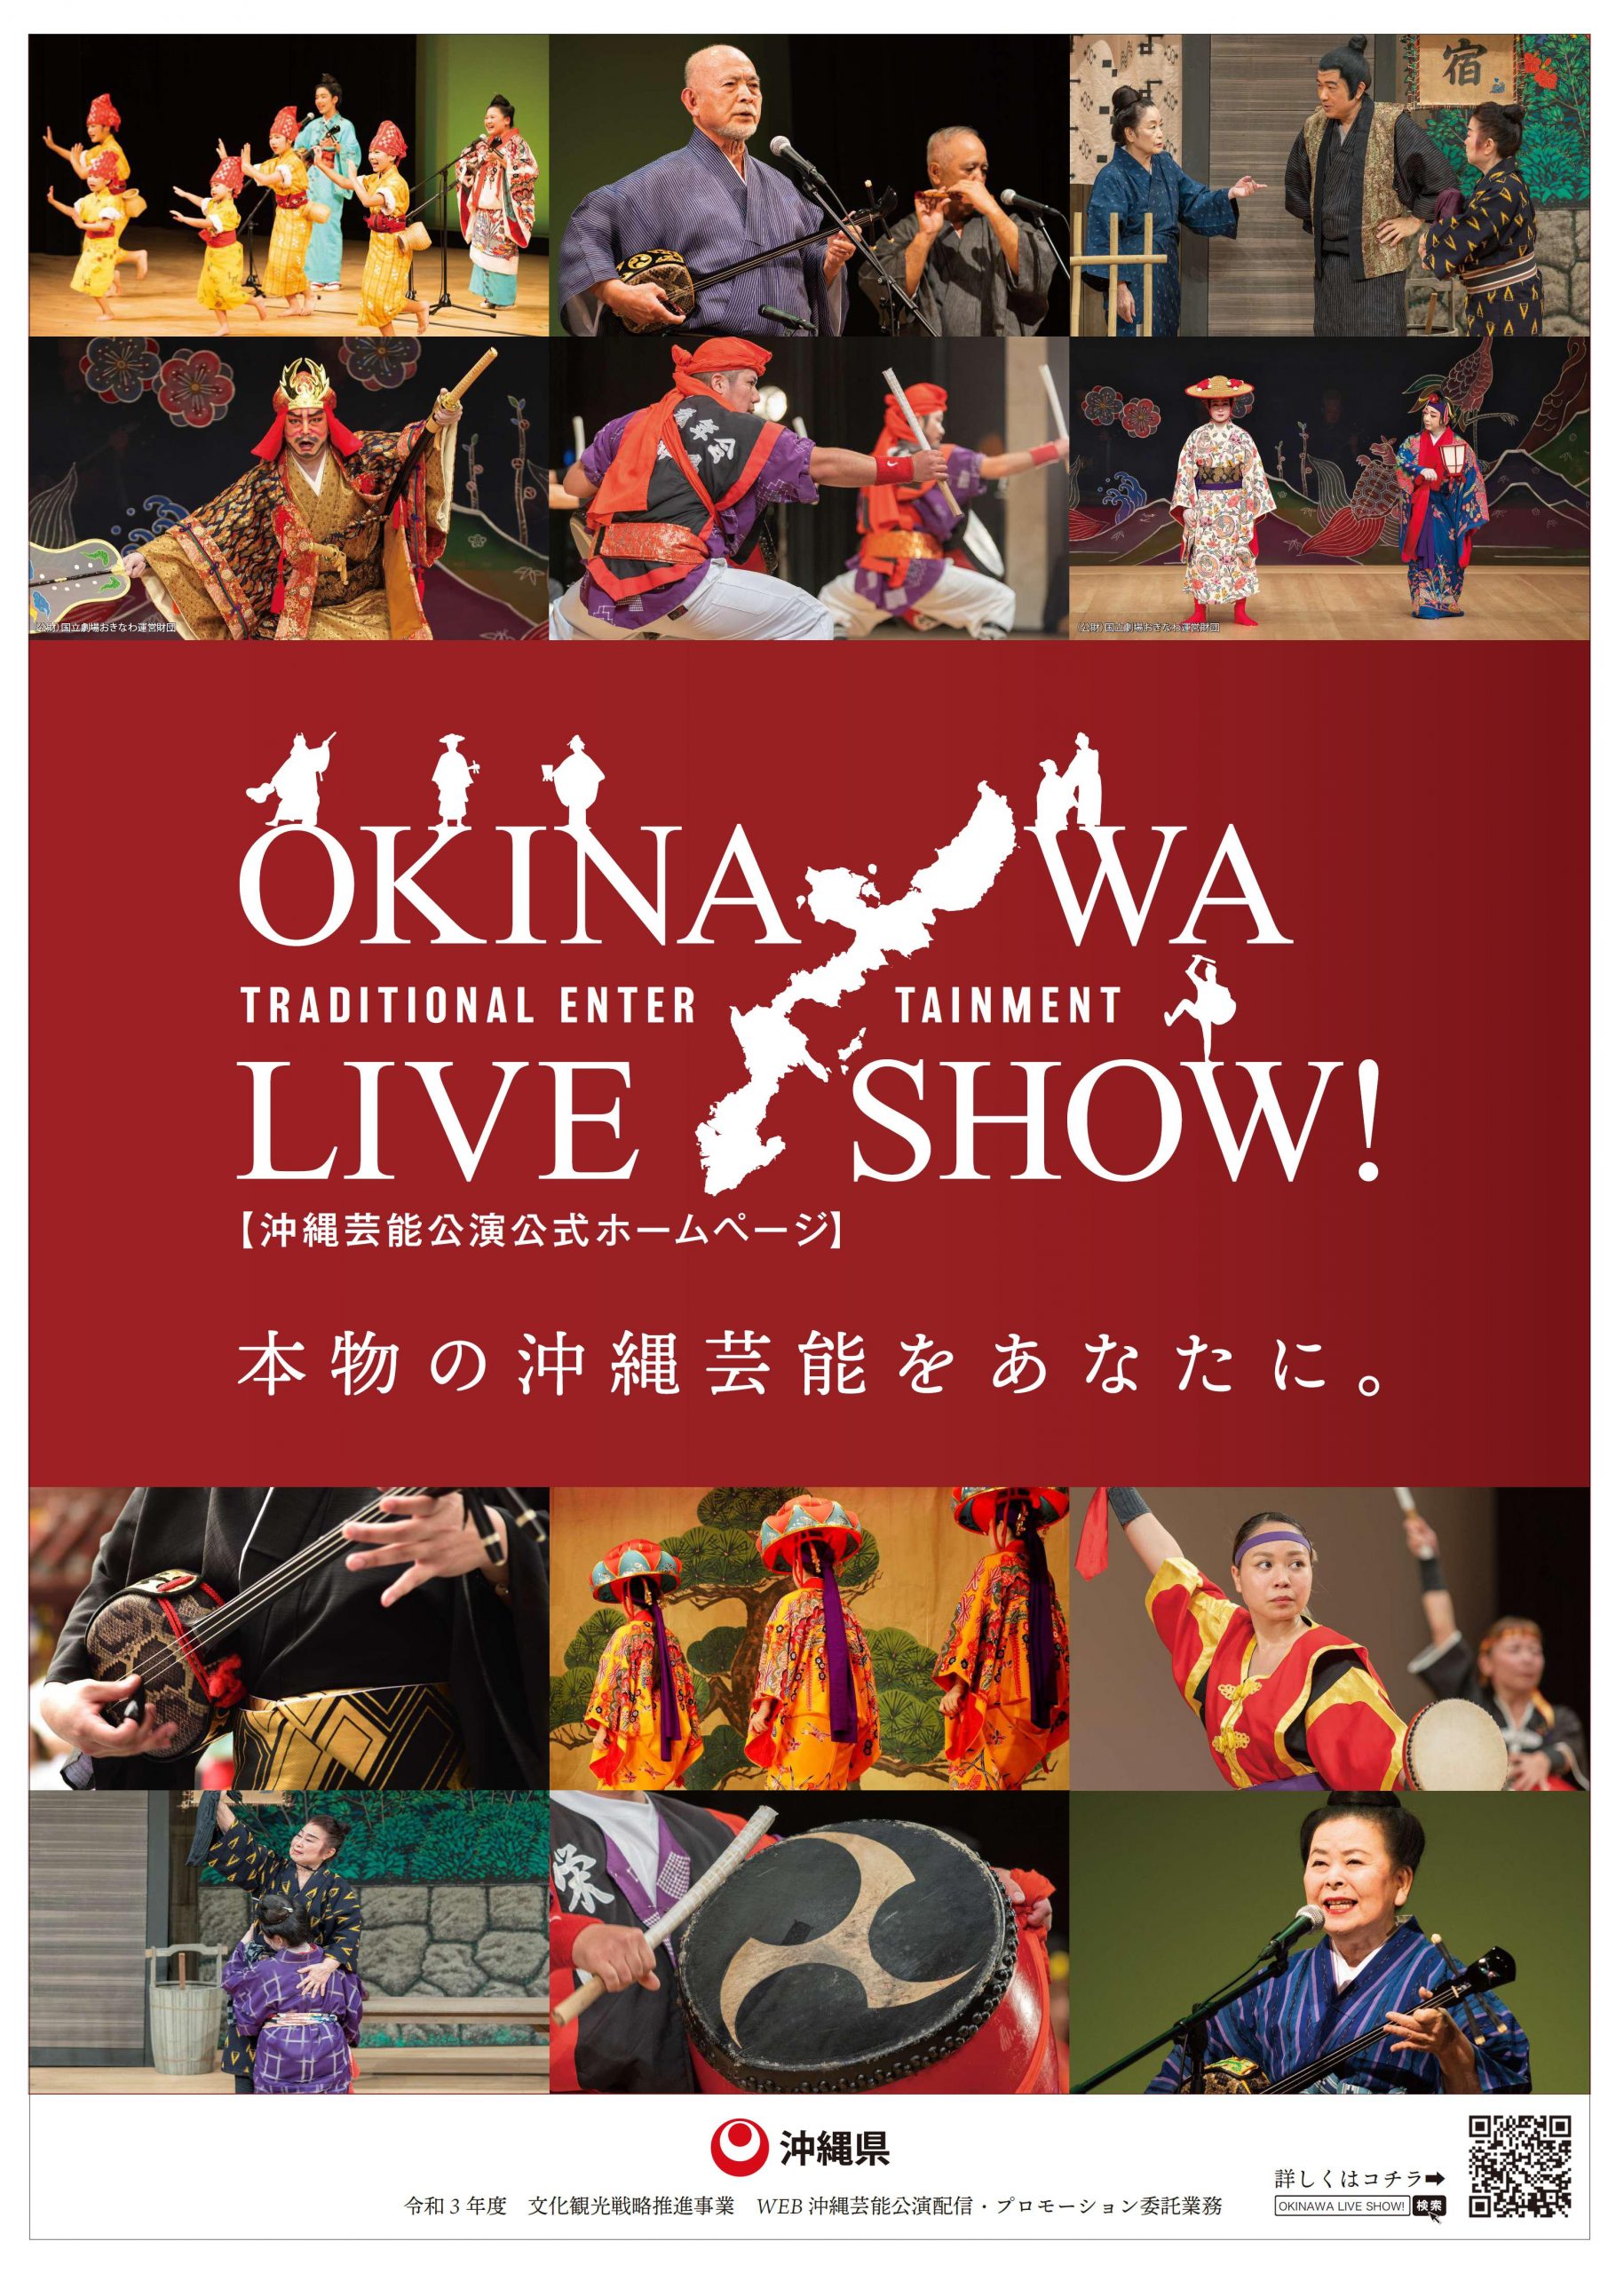 沖縄芸能の動画を多言語でネット配信「OKINAWA LIVE SHOW!」